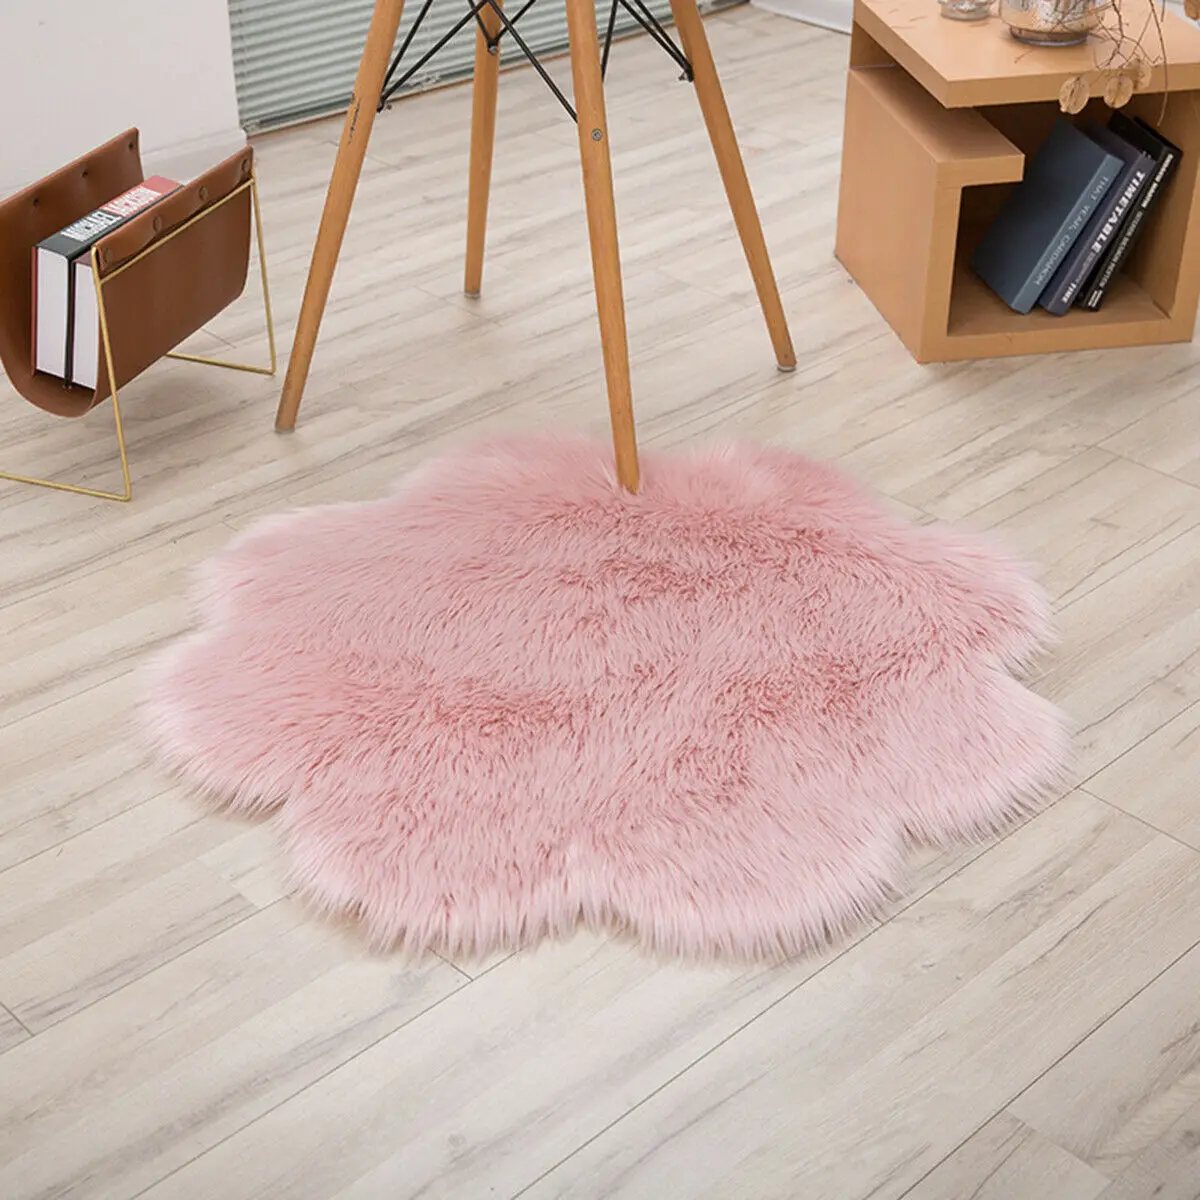 Пушистые коврики в форме цветка, противоскользящий ворсистый ковер для столовой, мягкий коврик для дома, спальни - Цвет: Light Pink